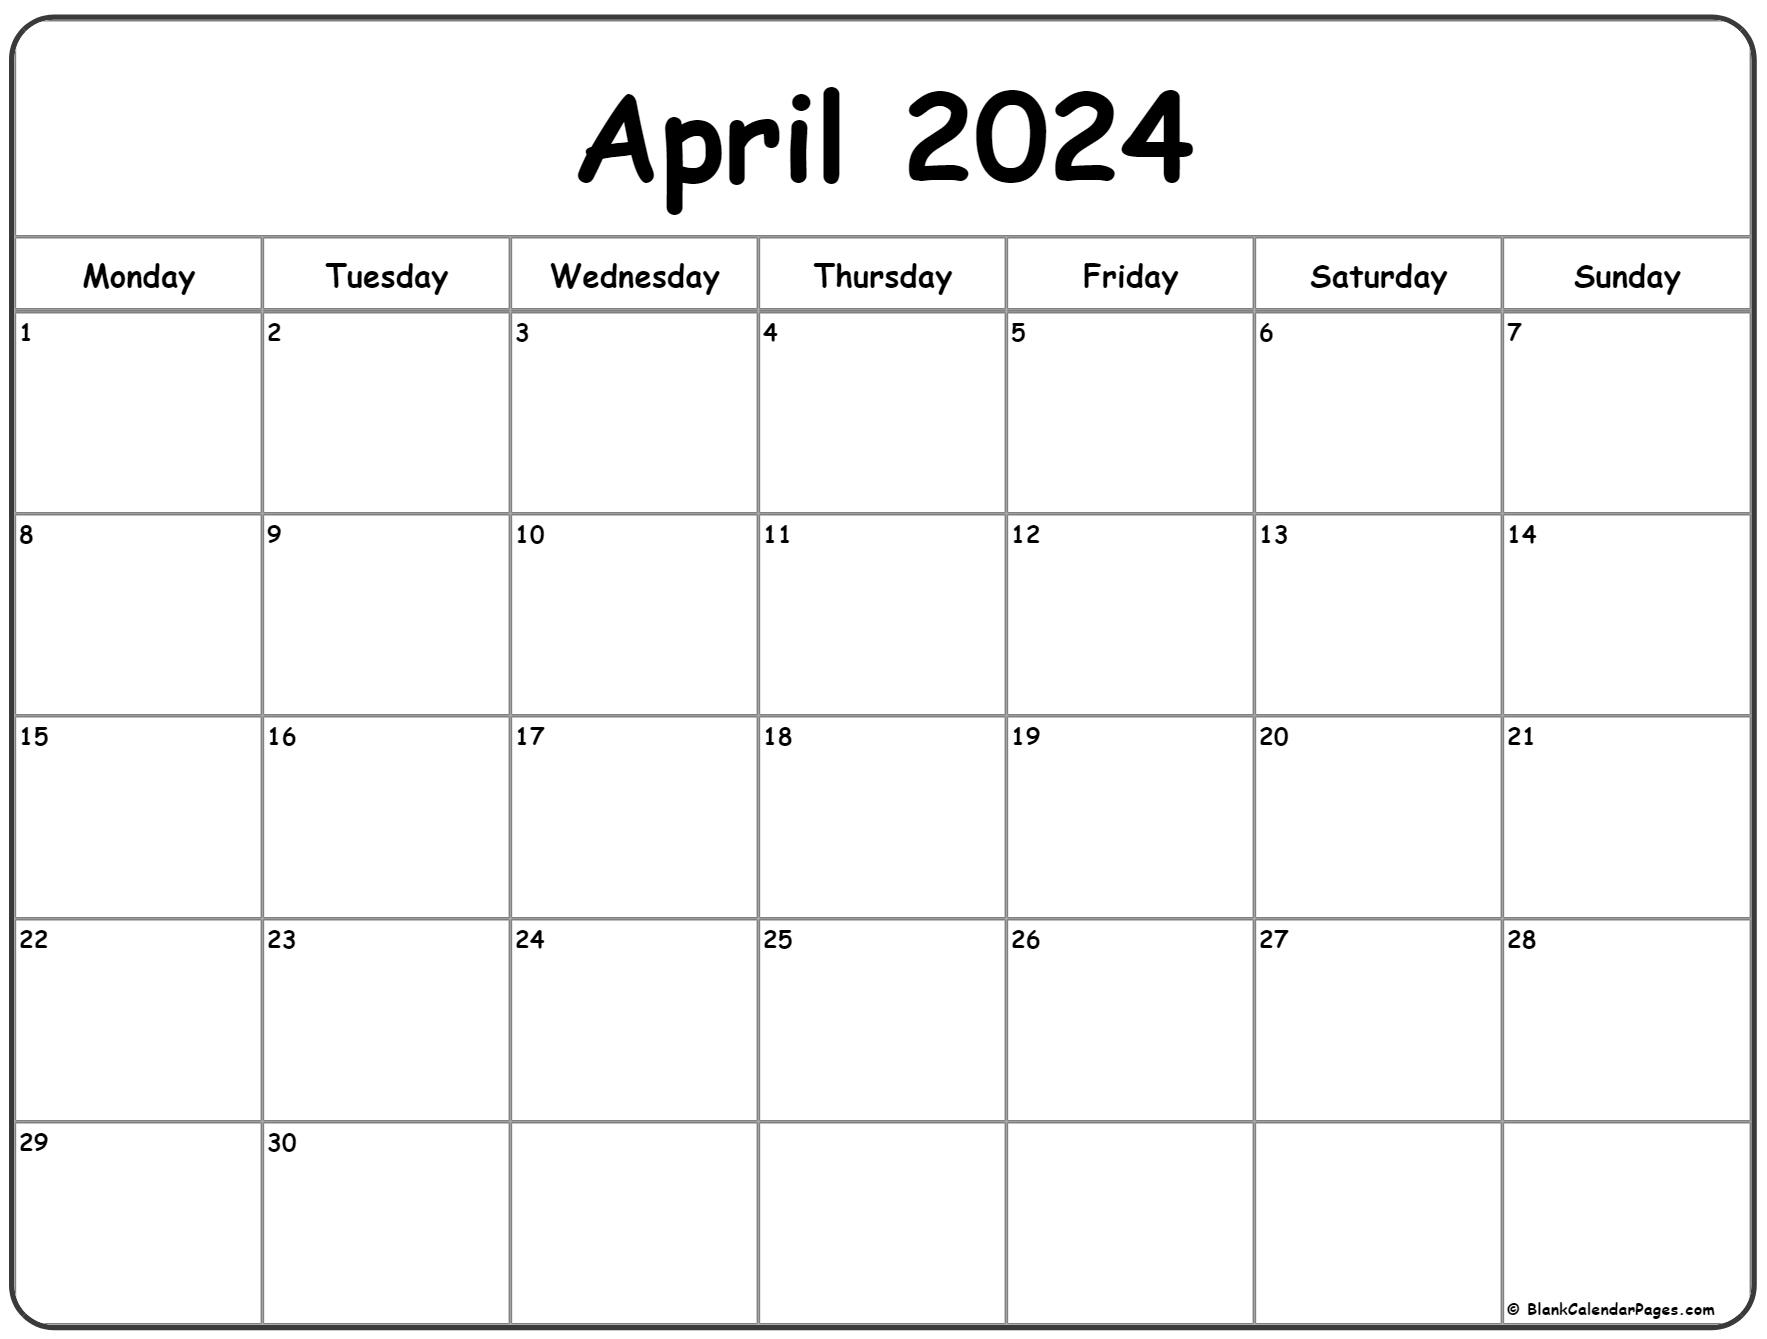 April 2024 Monday Calendar | Monday To Sunday for Printable Calendar April 2024